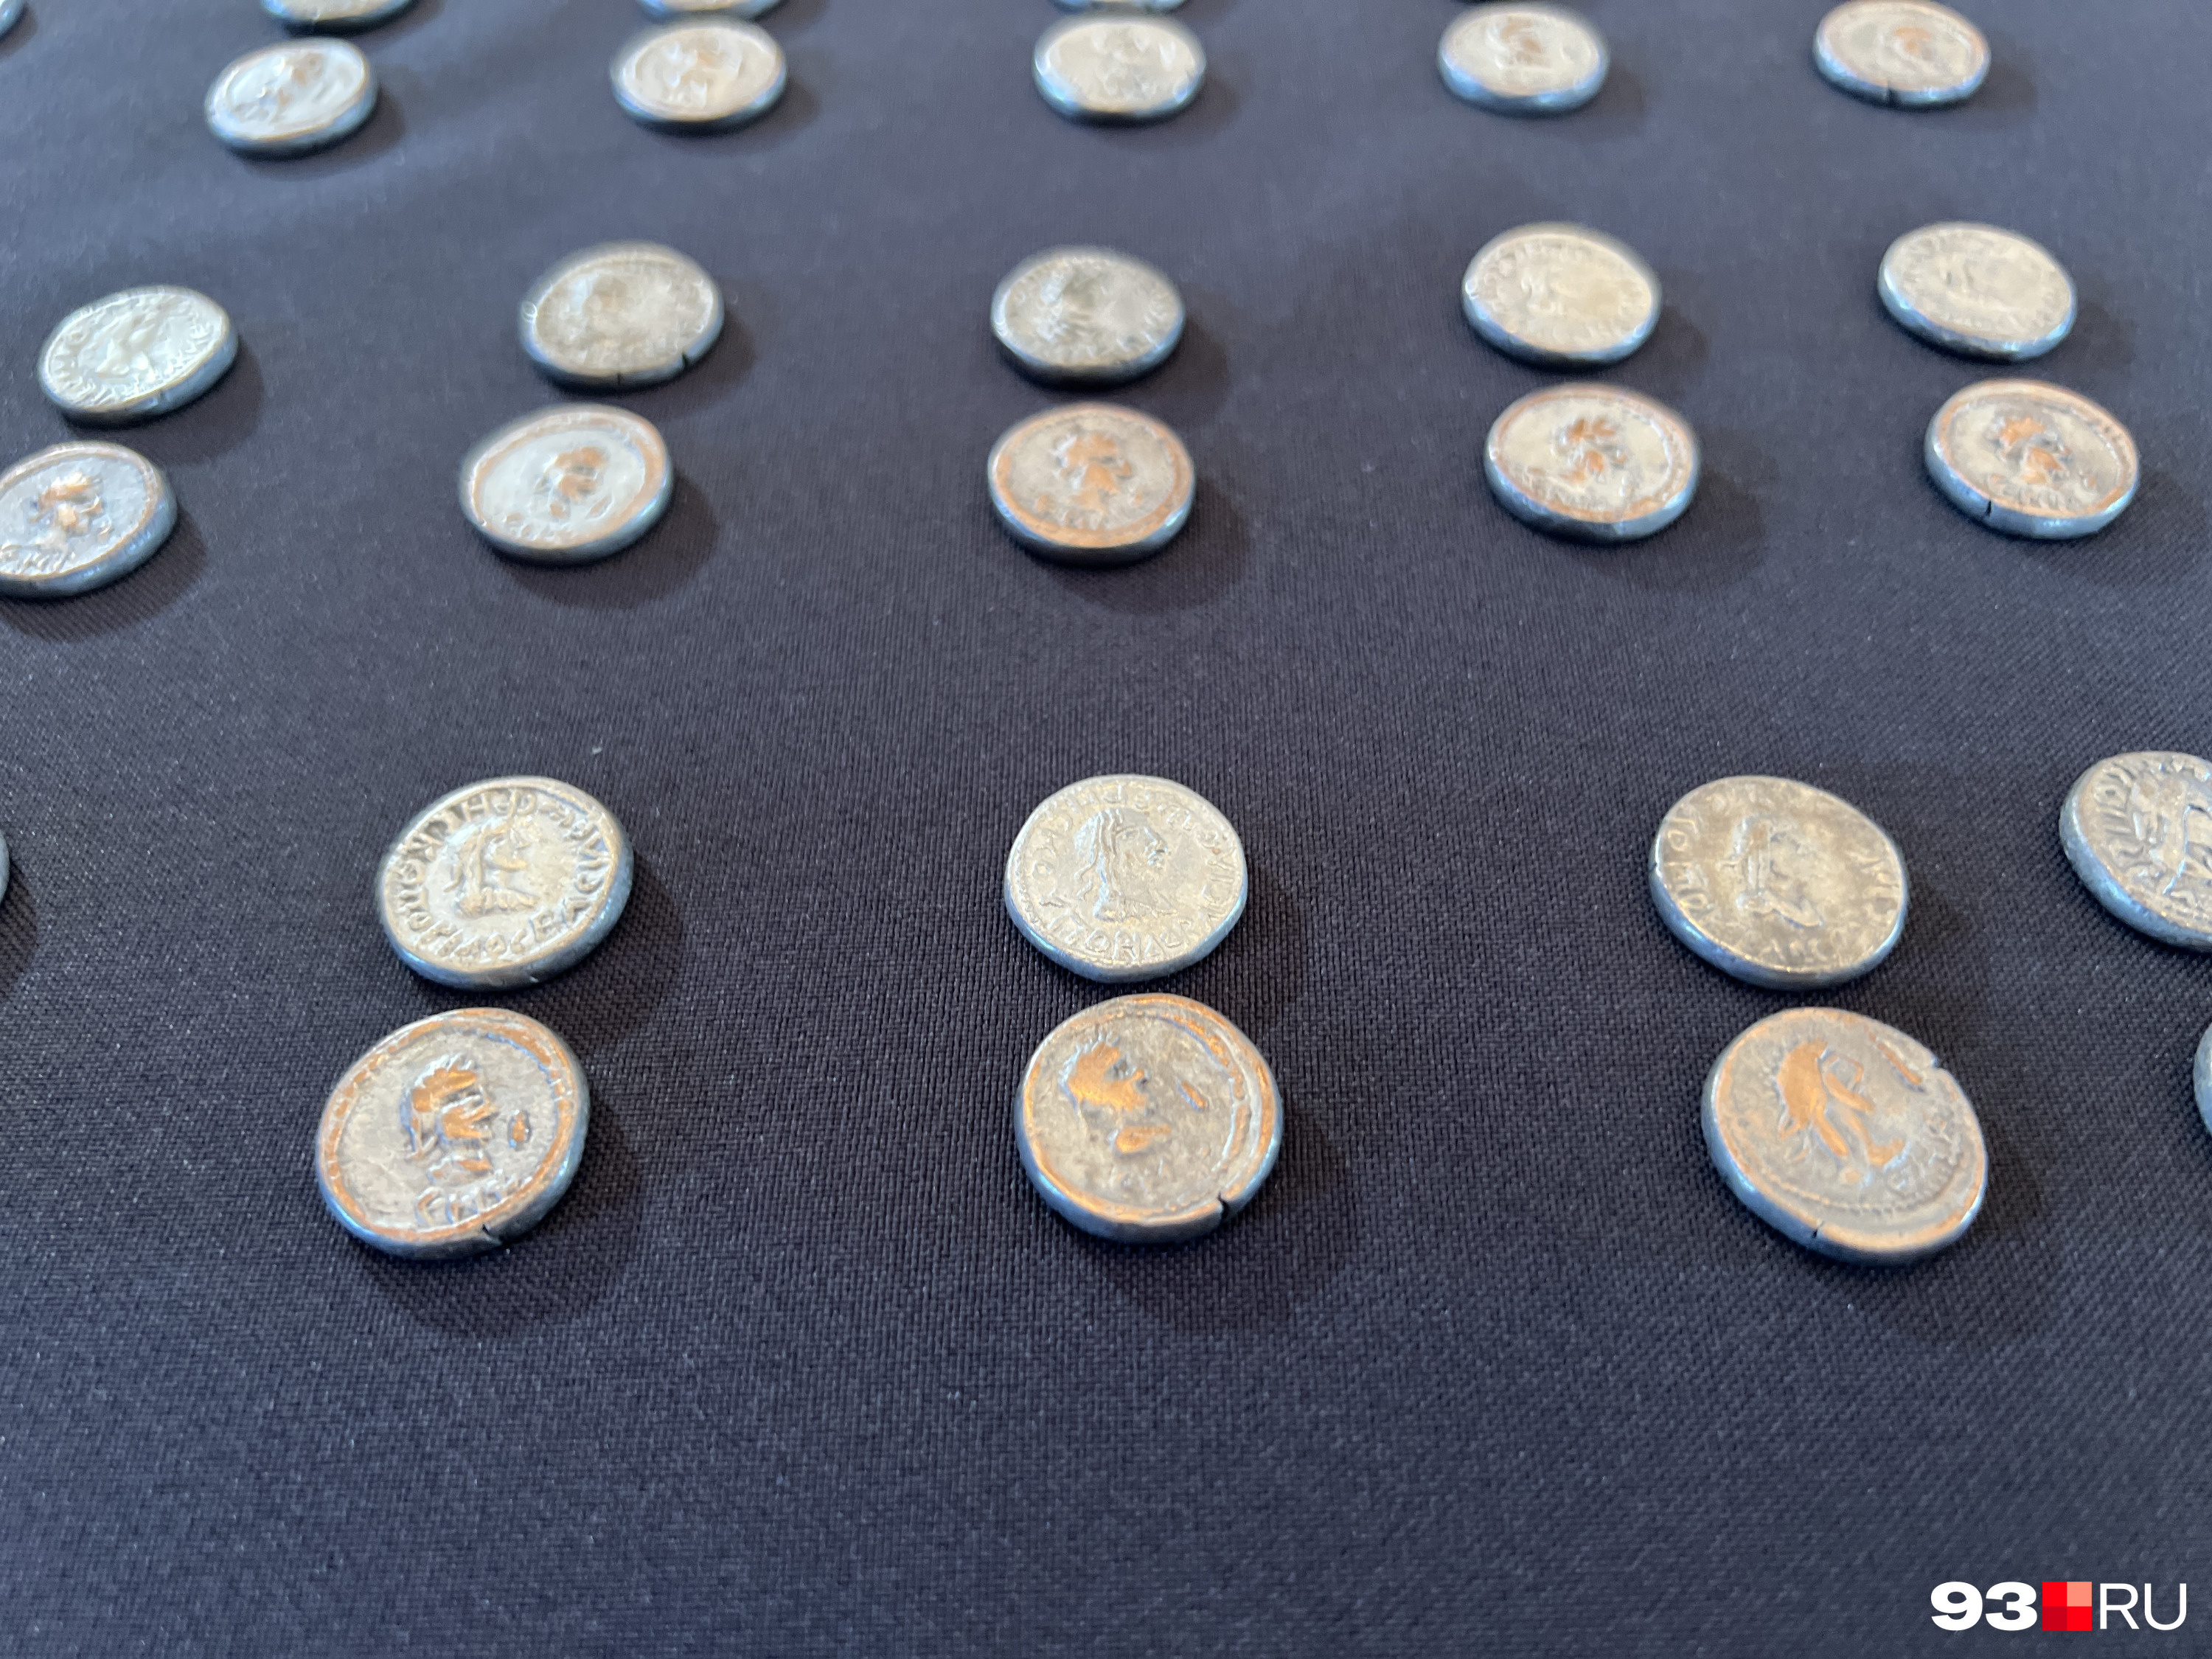 3596 серебряных монет IV века до н. э. нашли в амфоре недалеко от научного центра; из-за повышающейся инфляции серебро уходило в клады, а на его место приходила медь